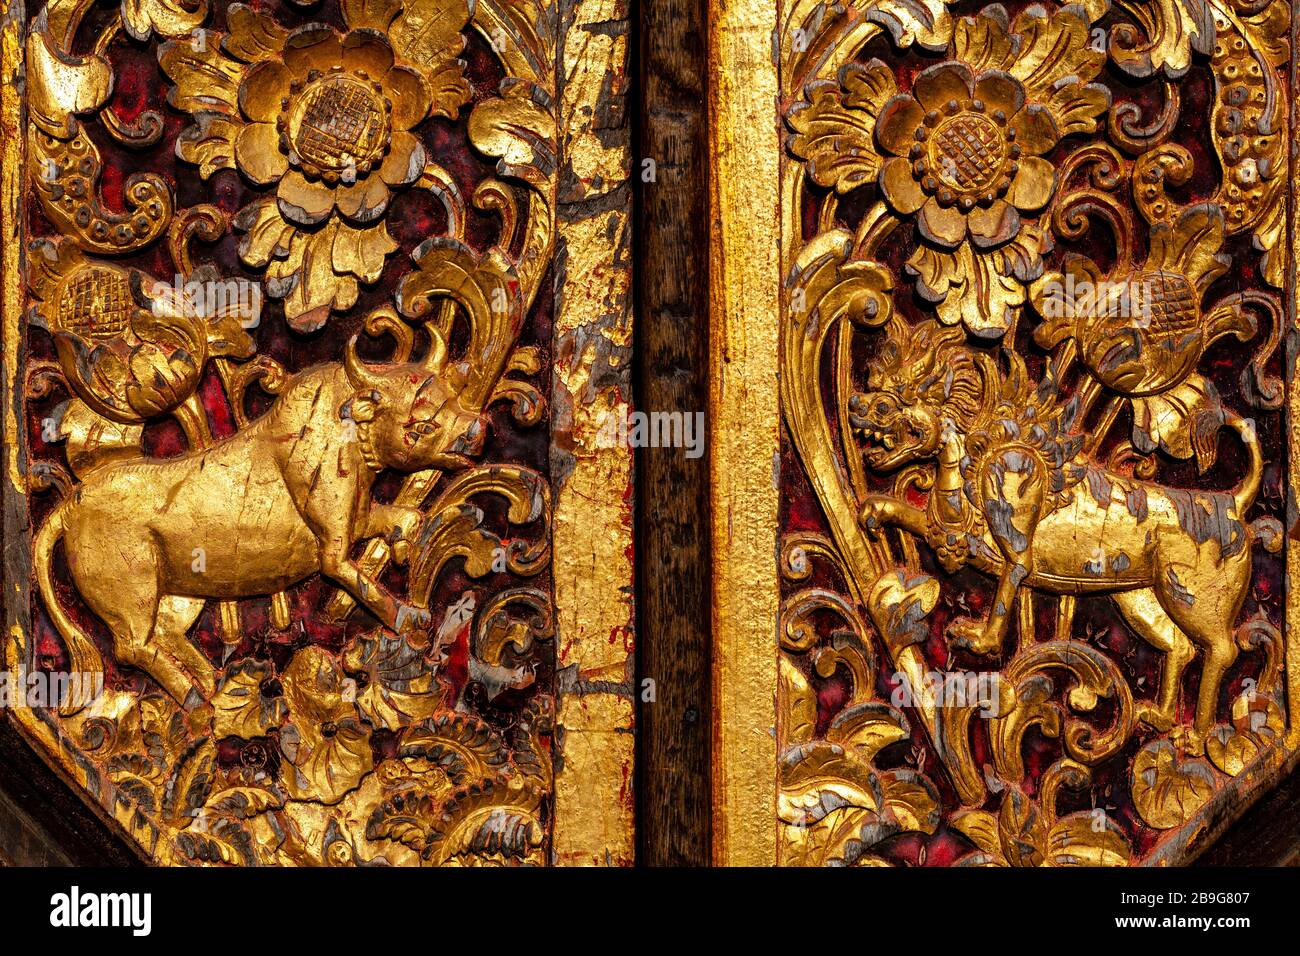 Carved Wooden Doors At The Ubud Palace, Ubud, Bali, Indonesia. Stock Photo